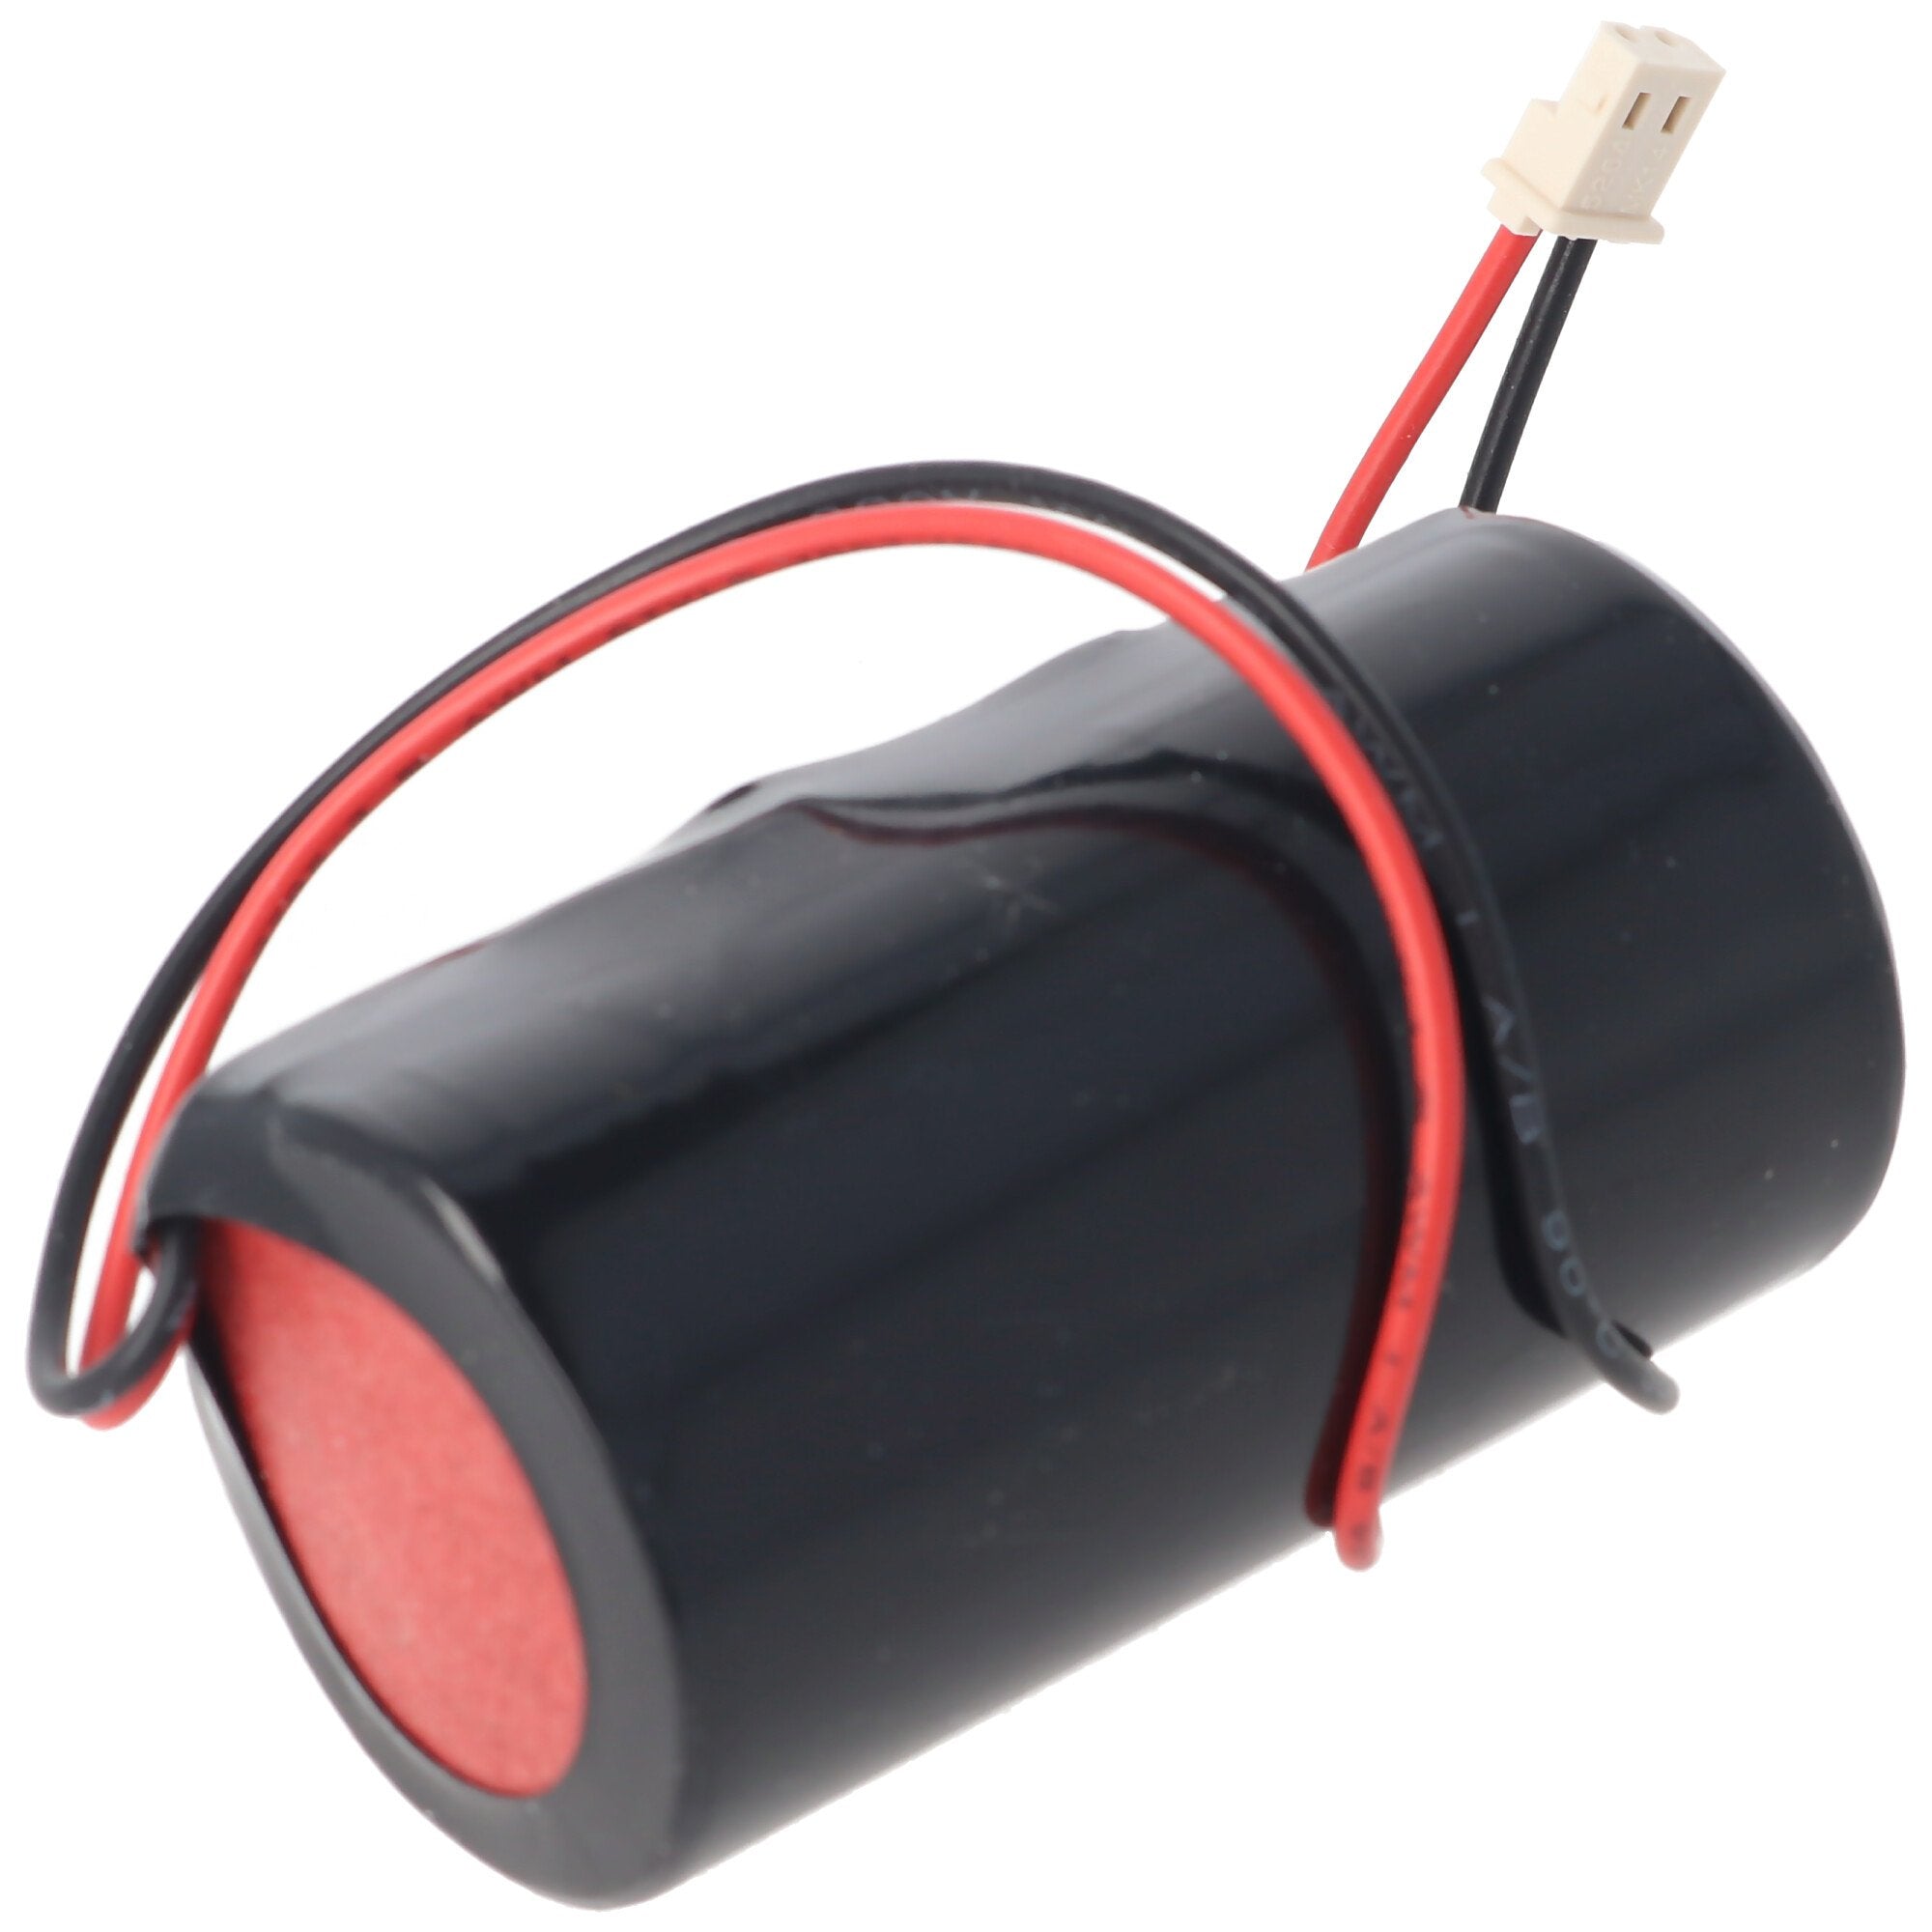 19000mAh battery suitable for Eve ER34615-GL101, 0-9912-K, ER34615M / W200, Visonic Siren 710, 720